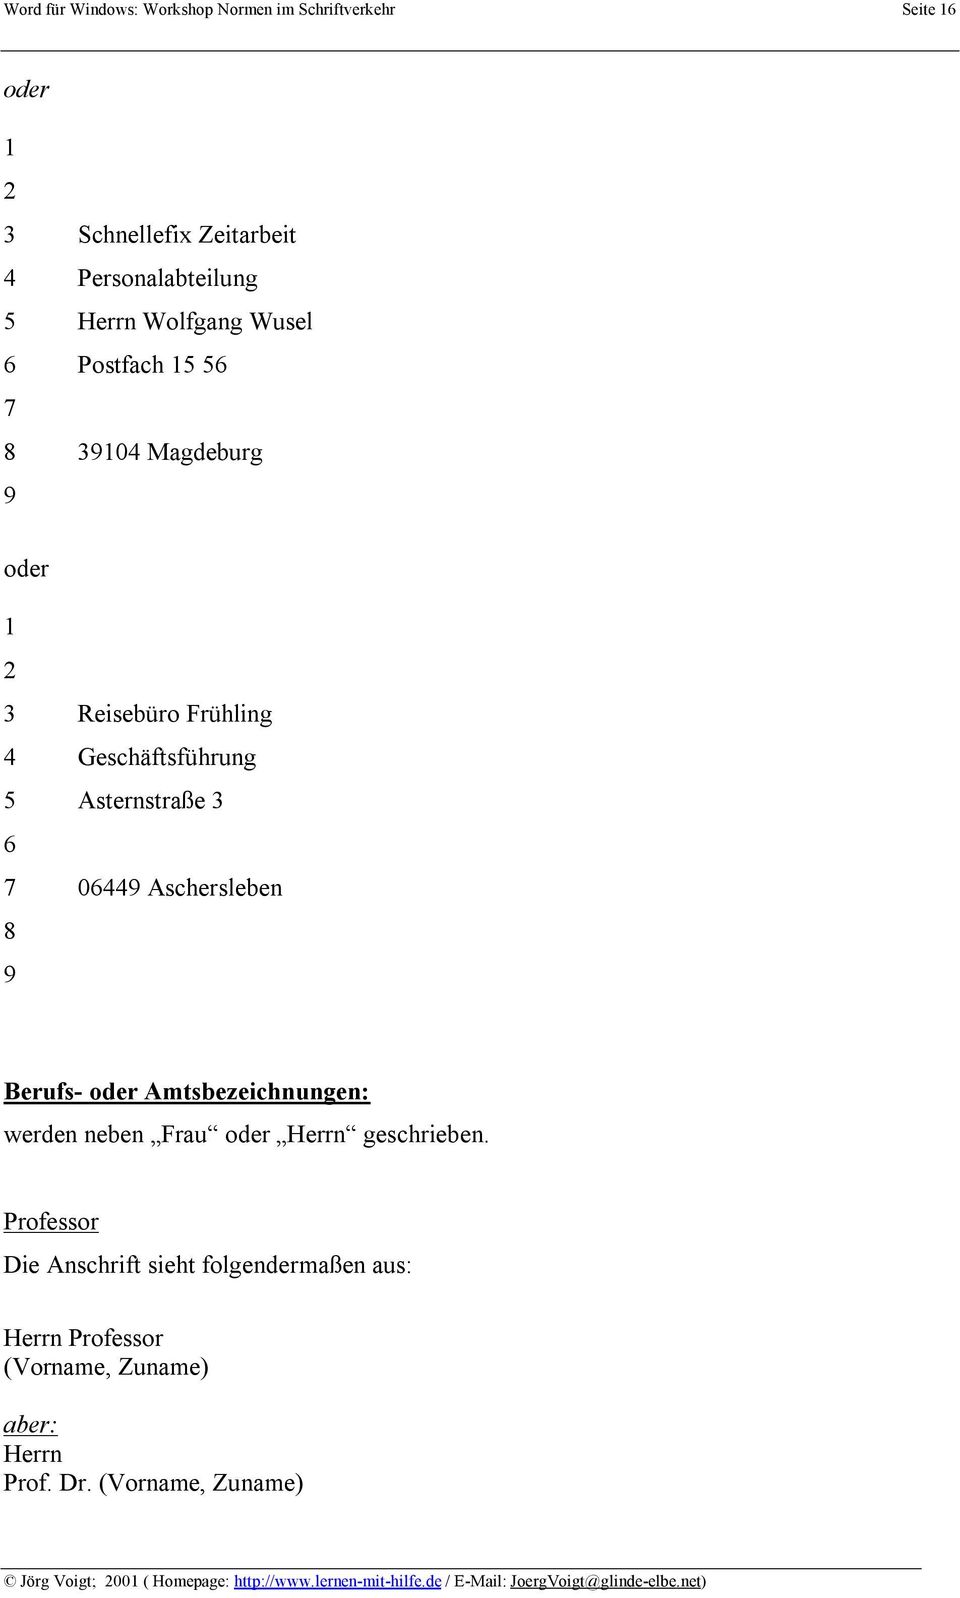 Word Fur Windows Workshop 3 Normen Im Schriftverkehr Pdf Kostenfreier Download